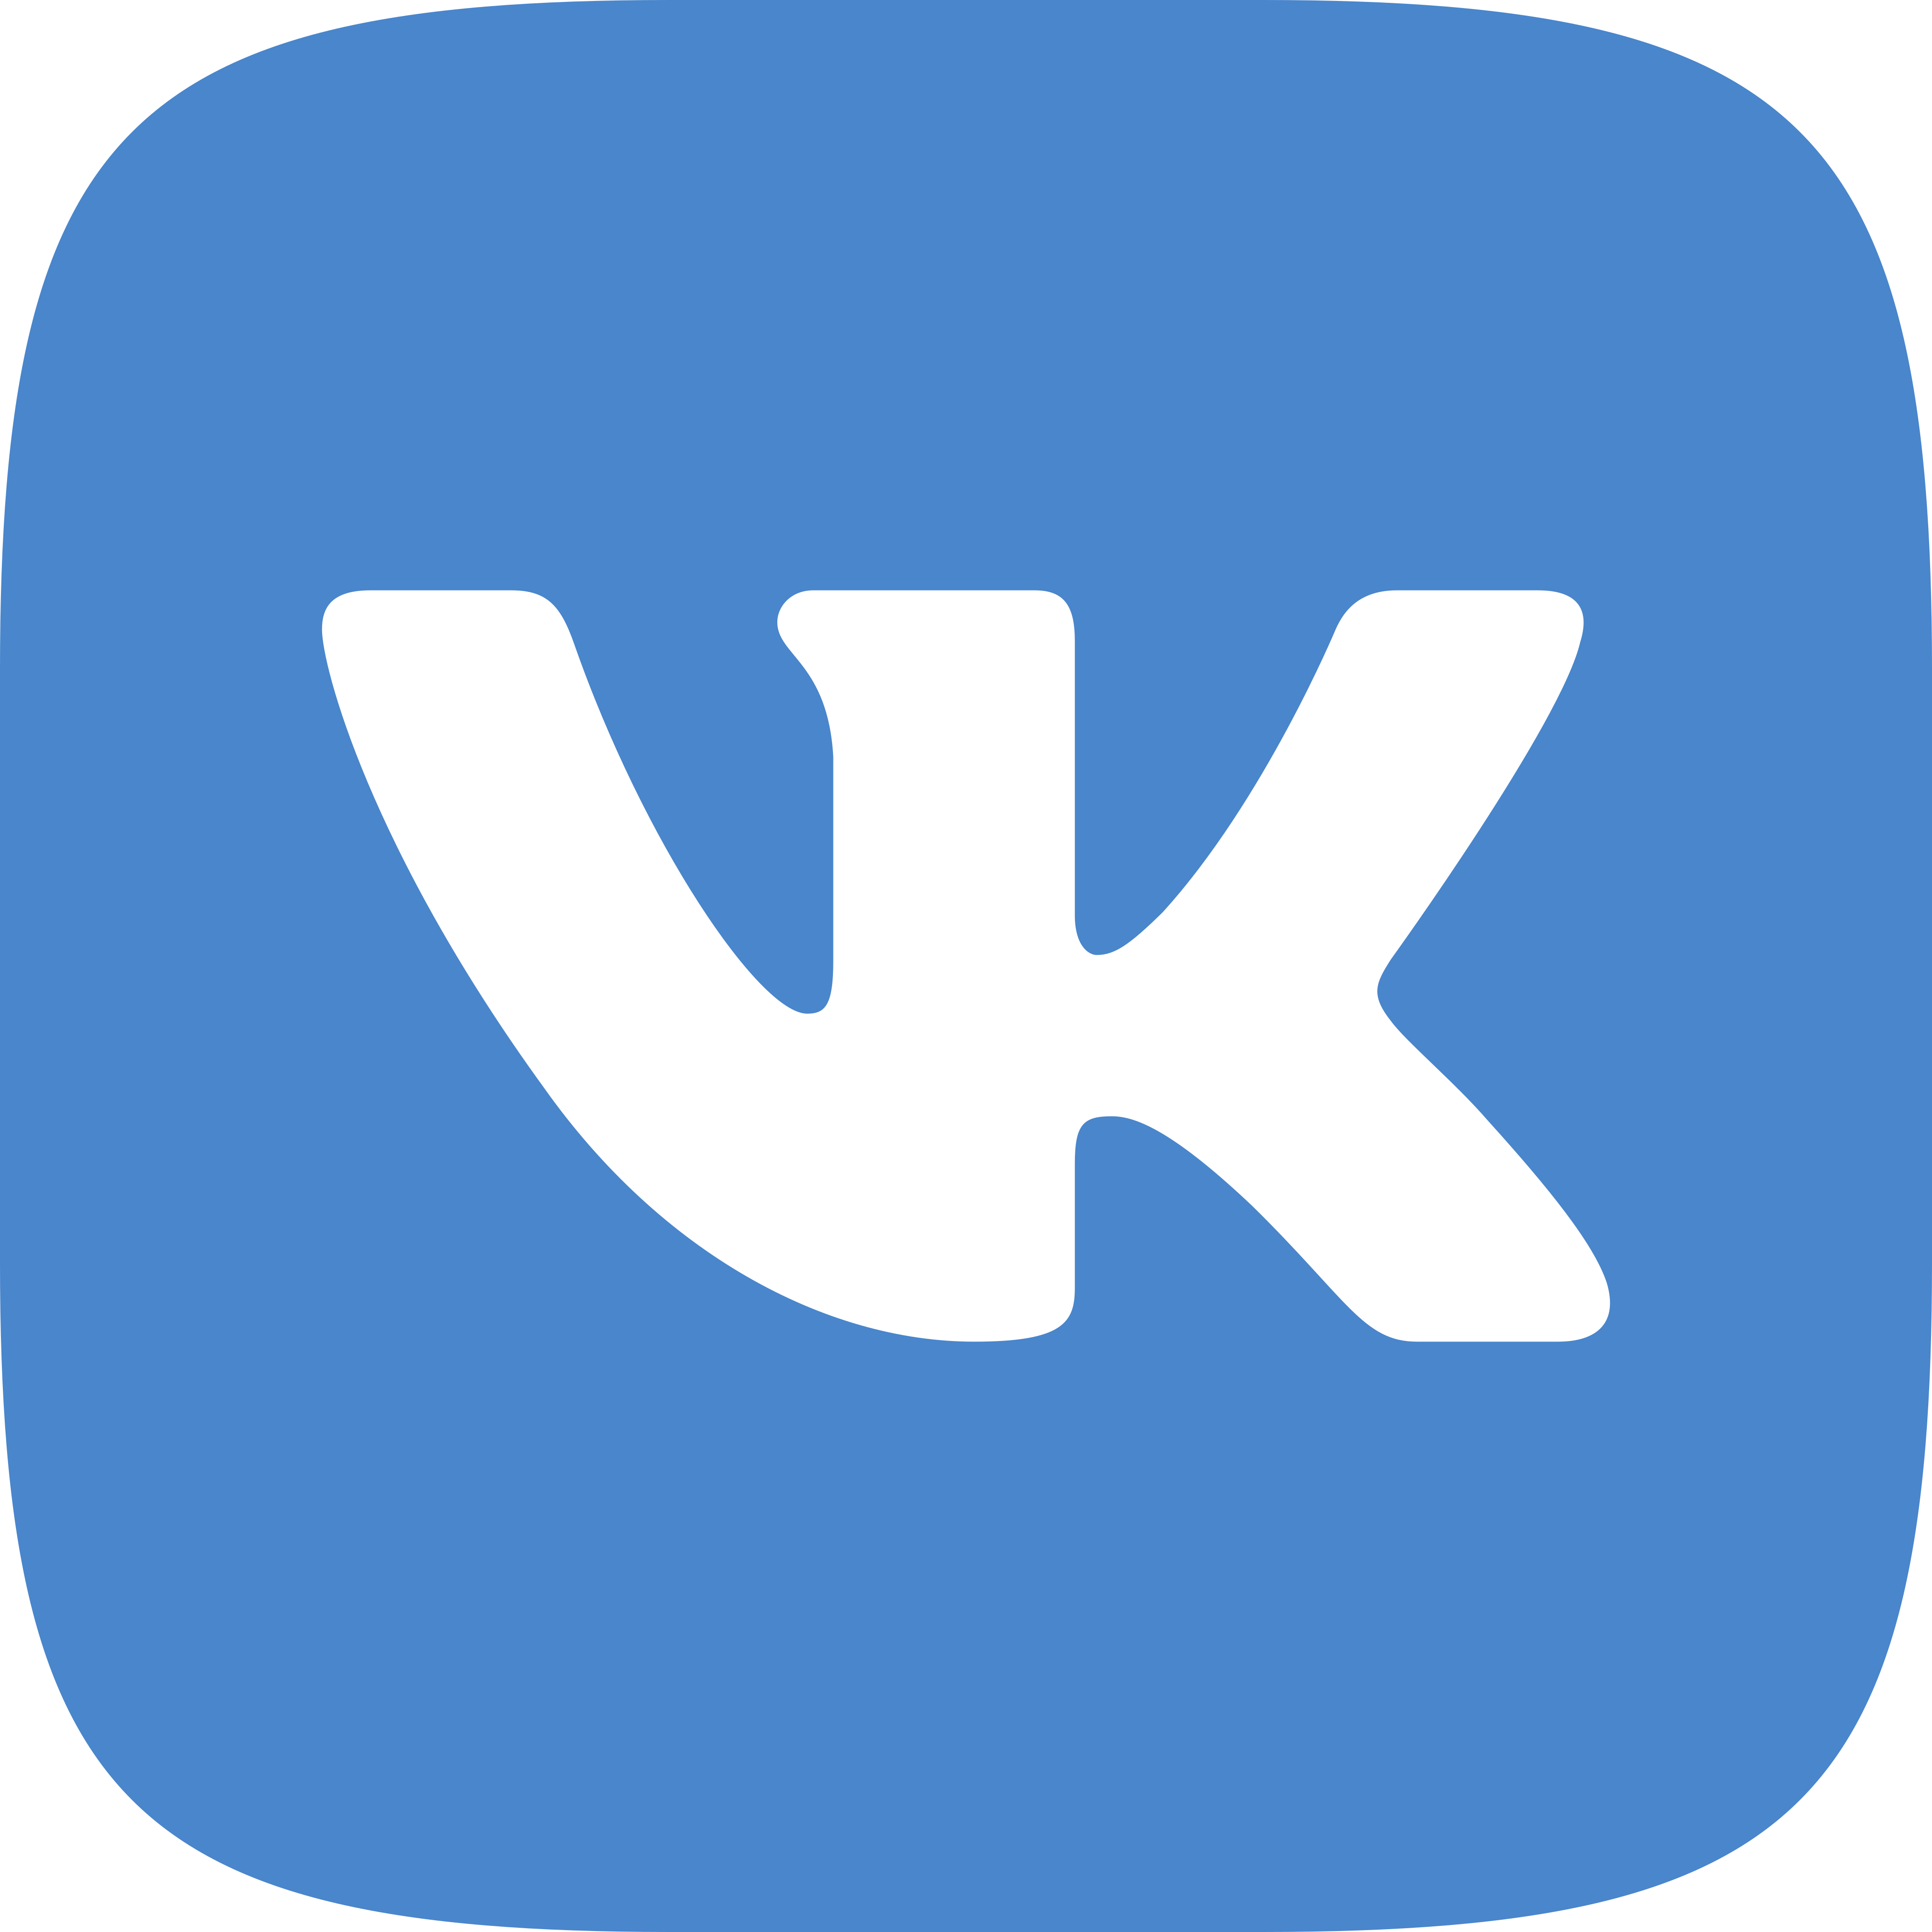 vk logo - VK Logo